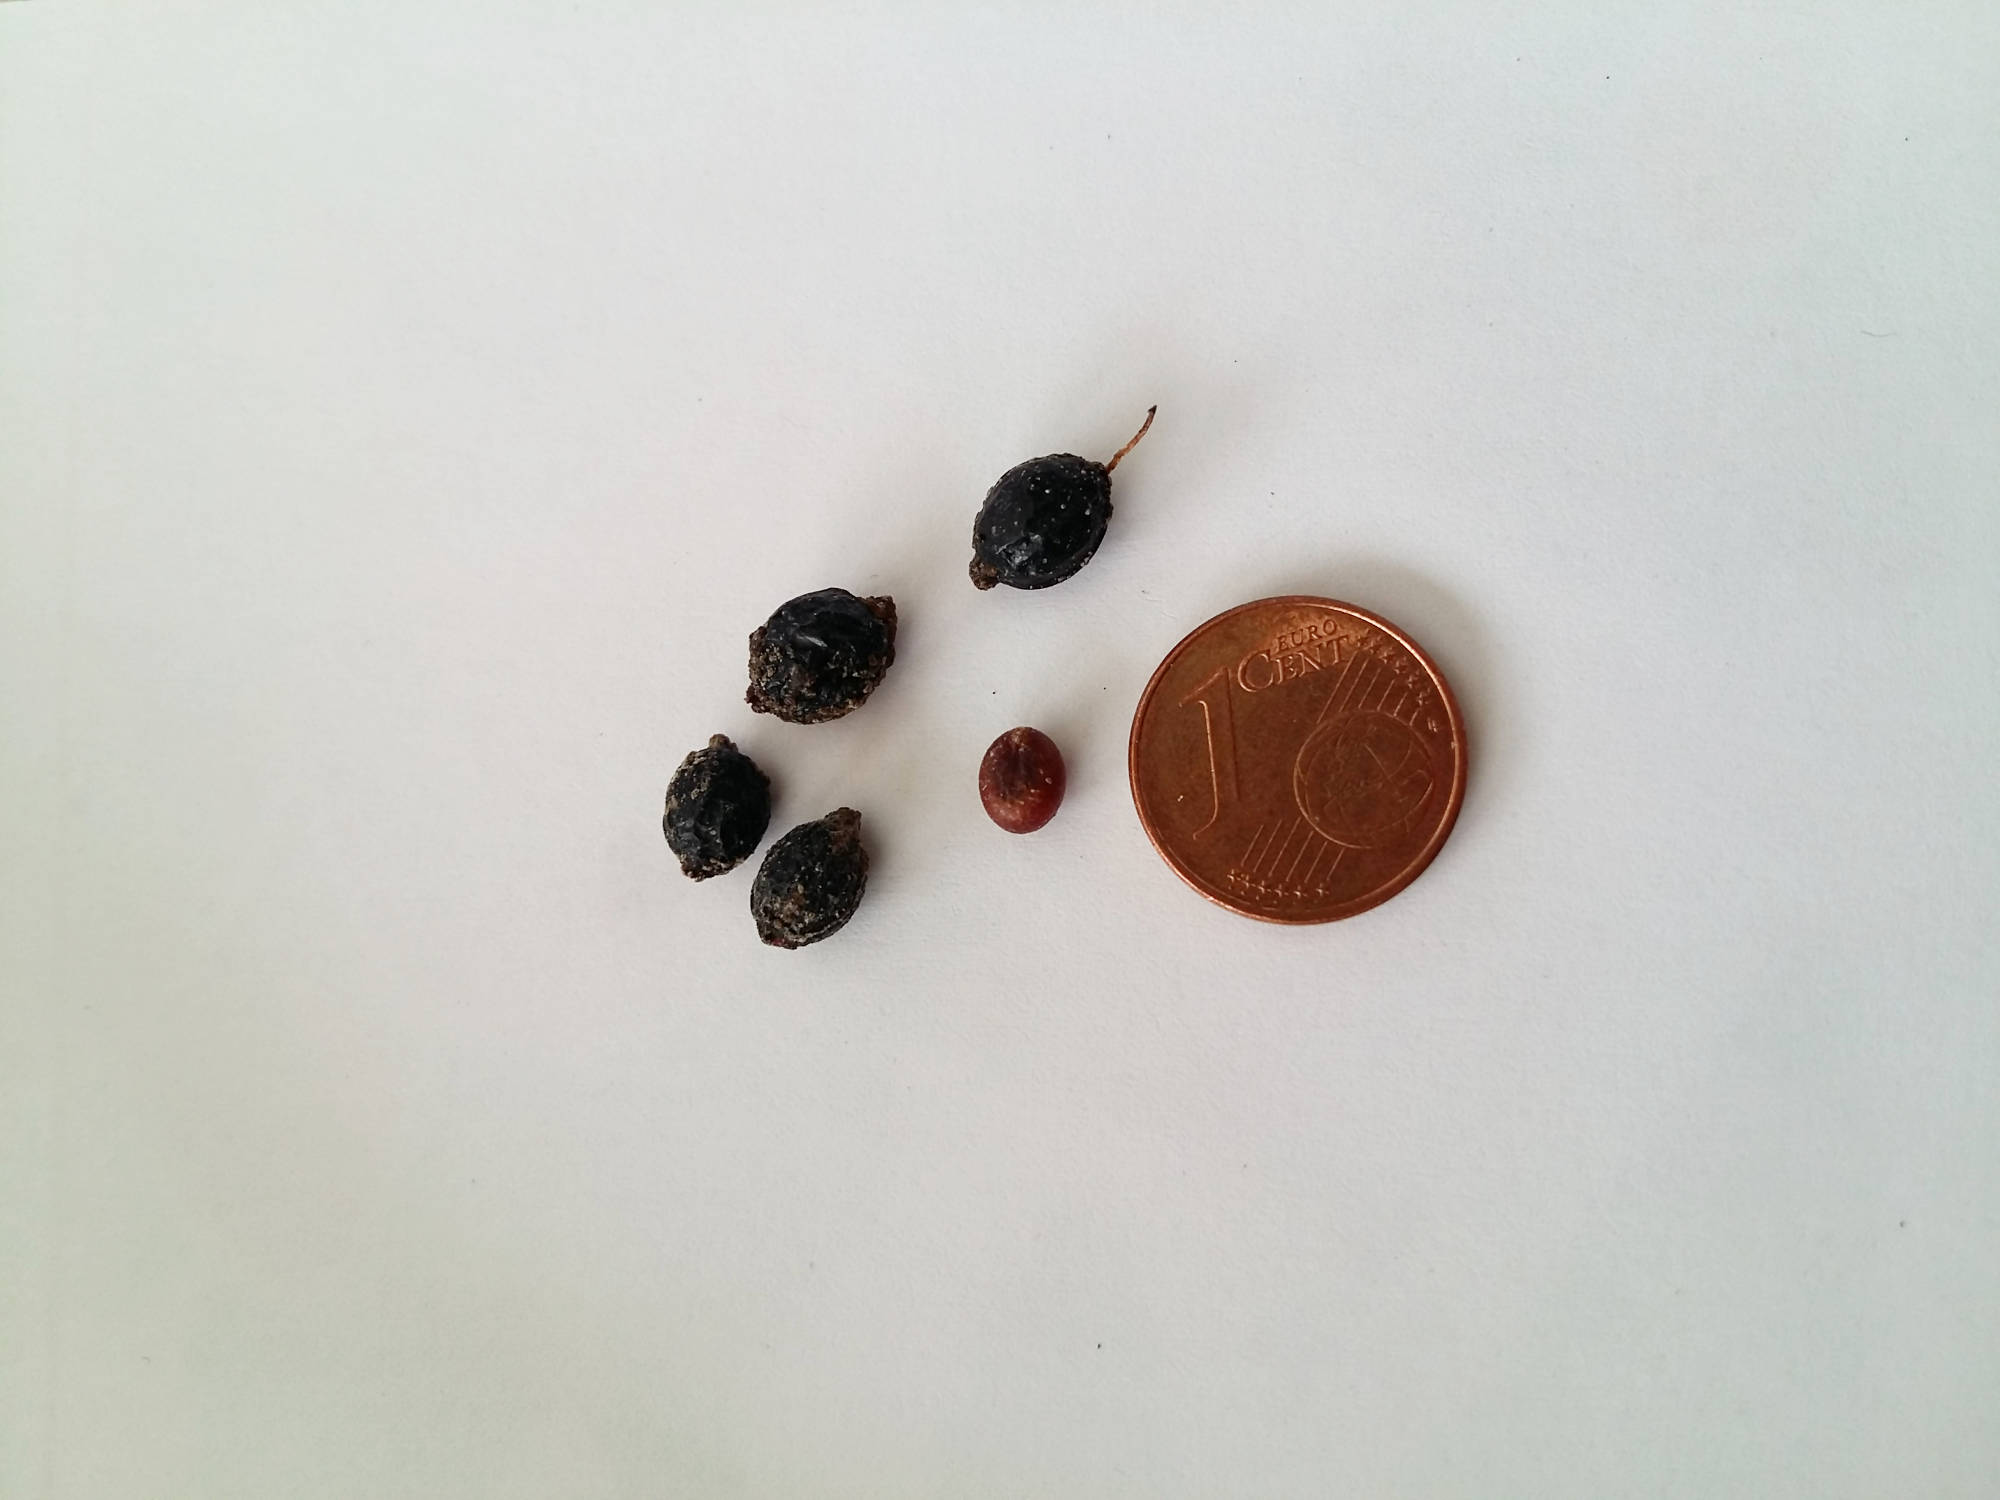 Bild der Samen einer Washingtonia filifera